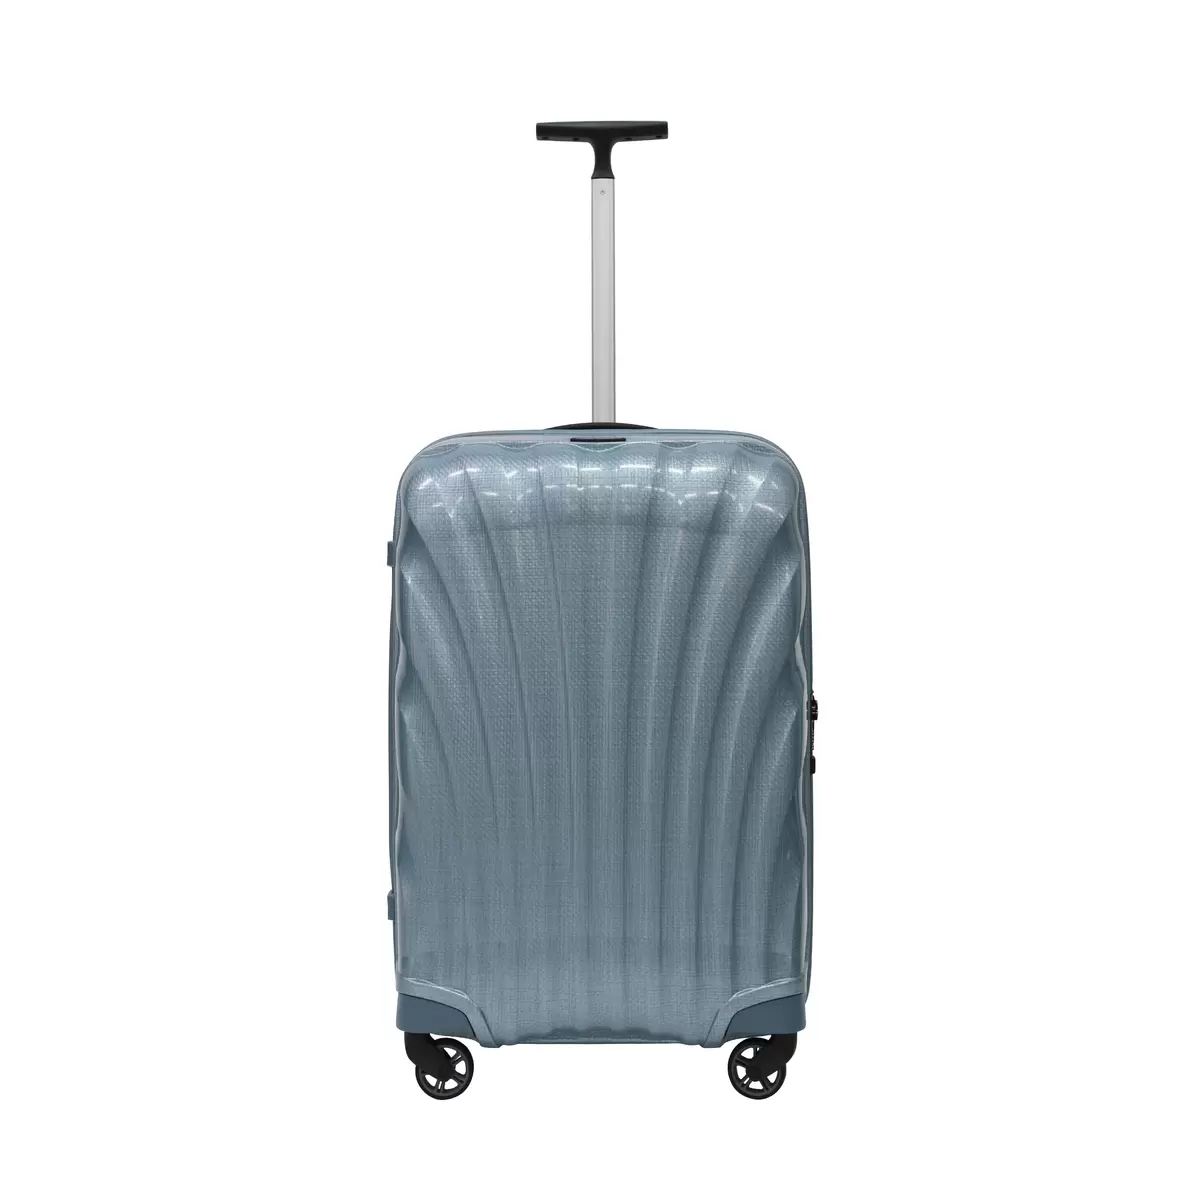 サムソナイト スーツケース コスモライト 3.0 69cm 73350 アイスブルー